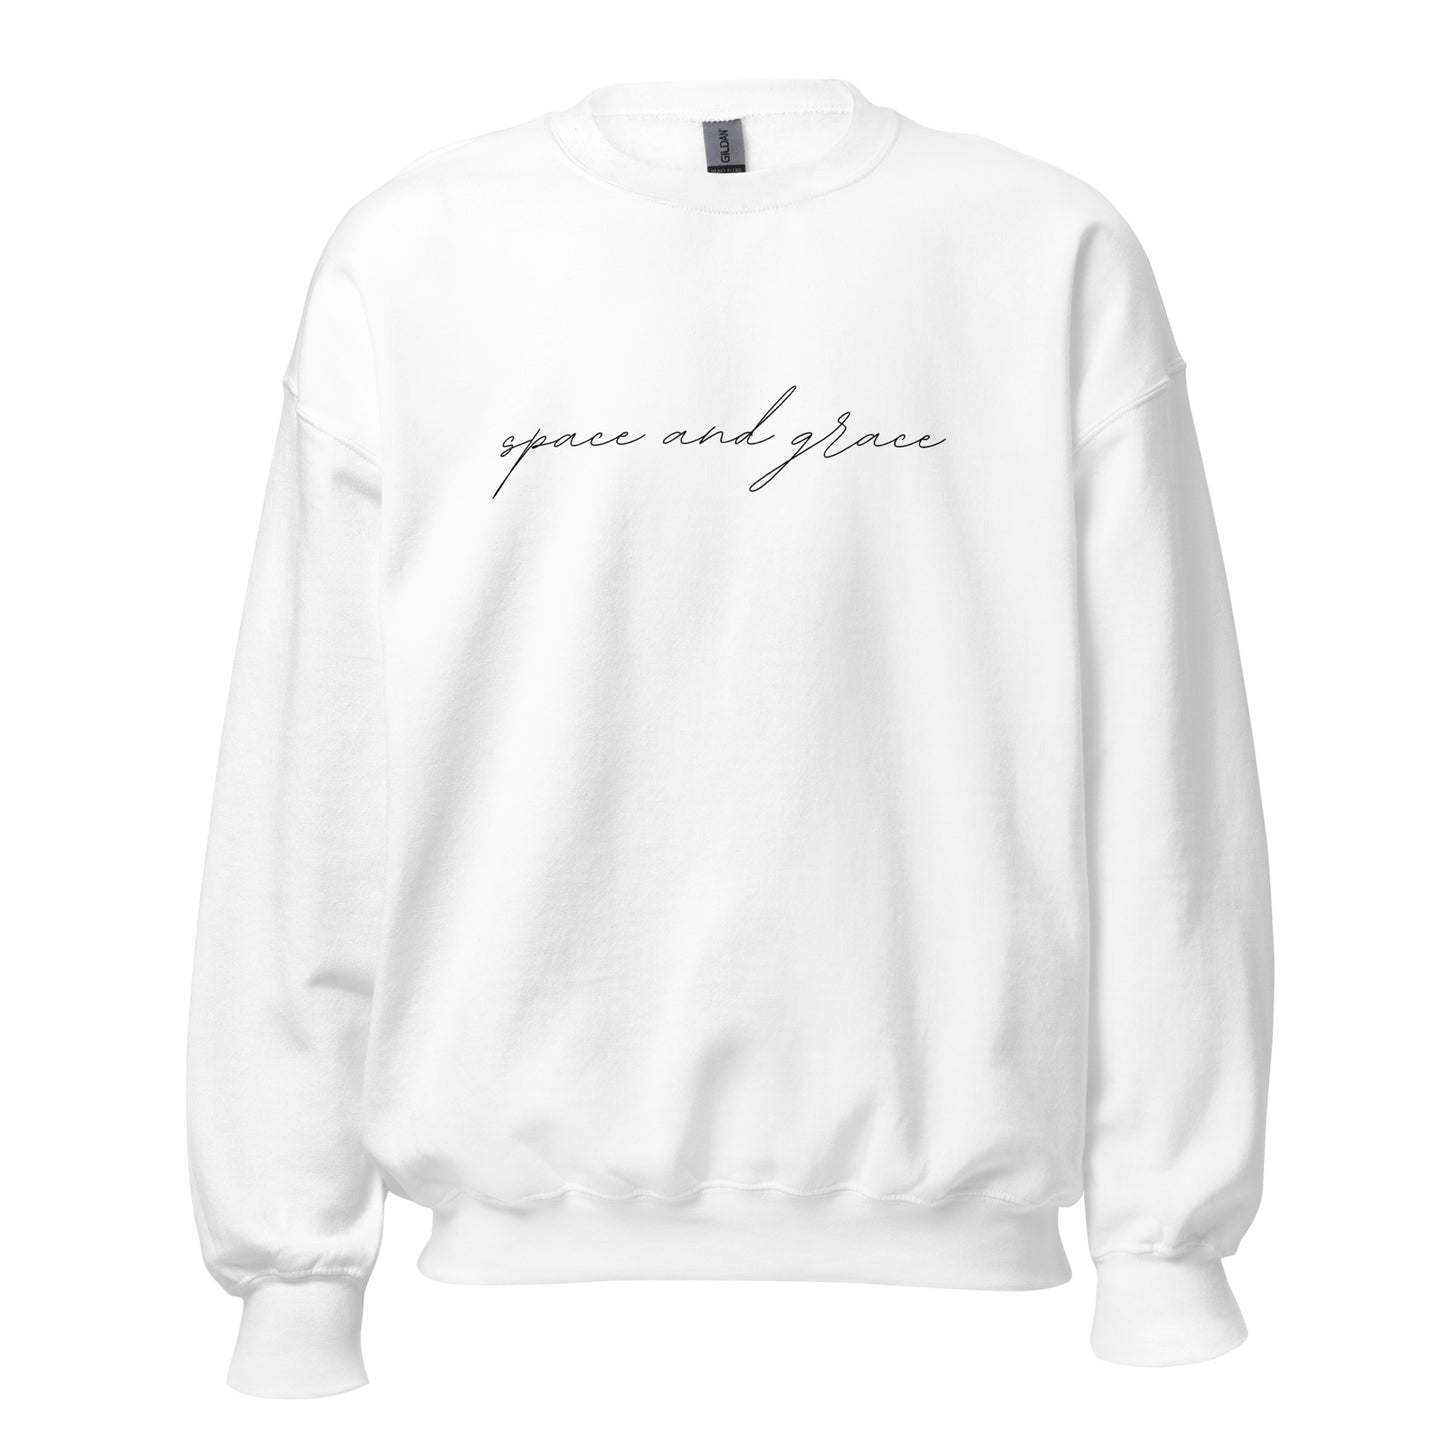 Space & Grace Sweatshirt